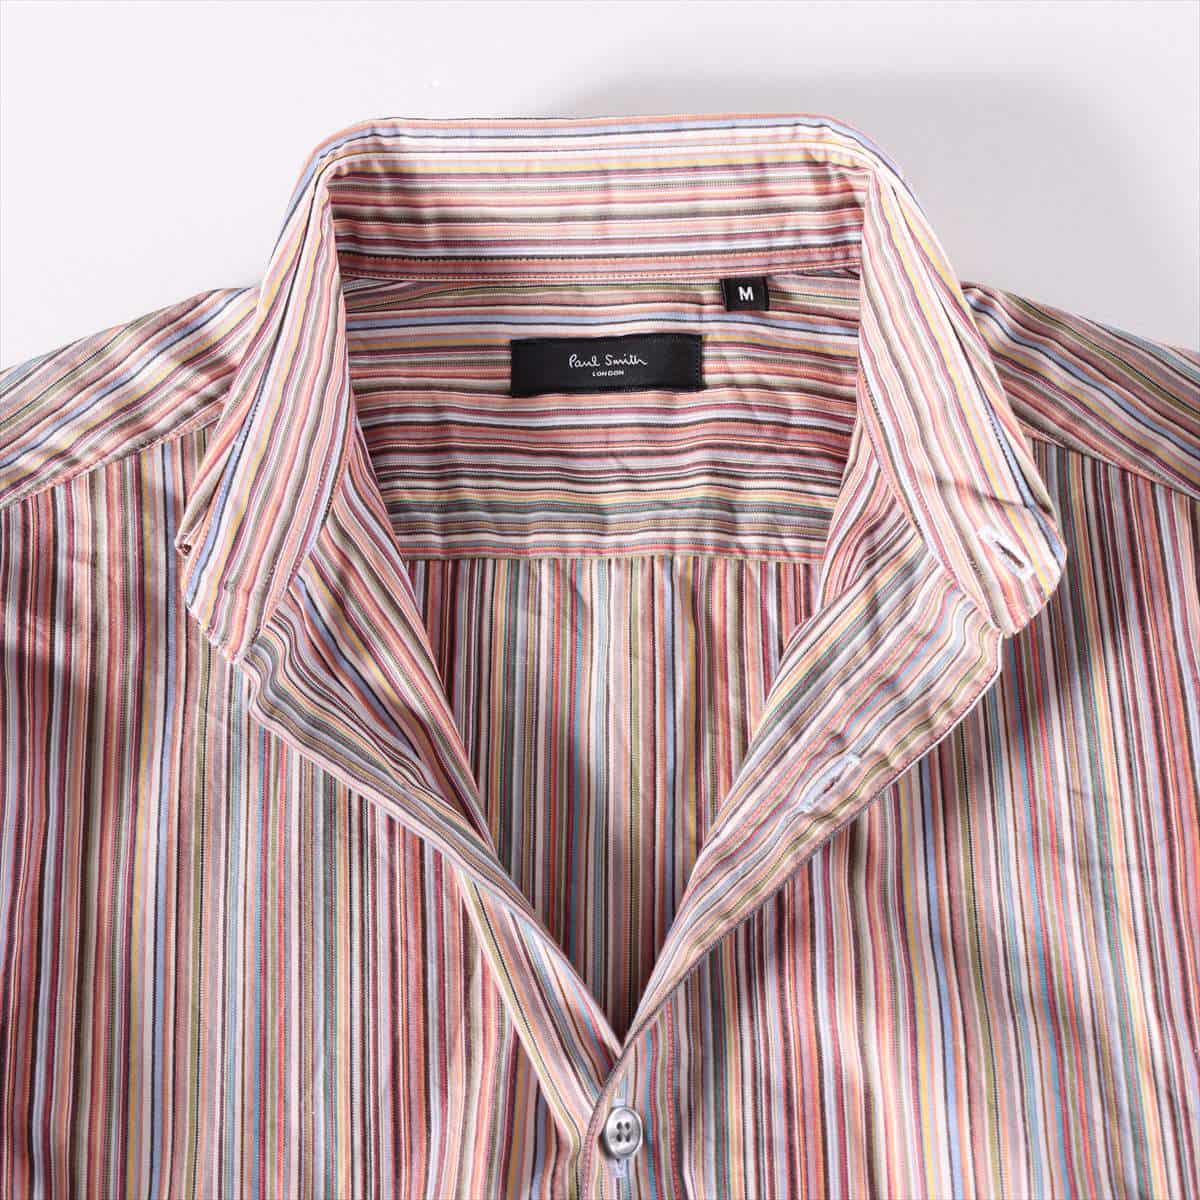 Paul Smith Cotton Shirt M Men's Multicolor